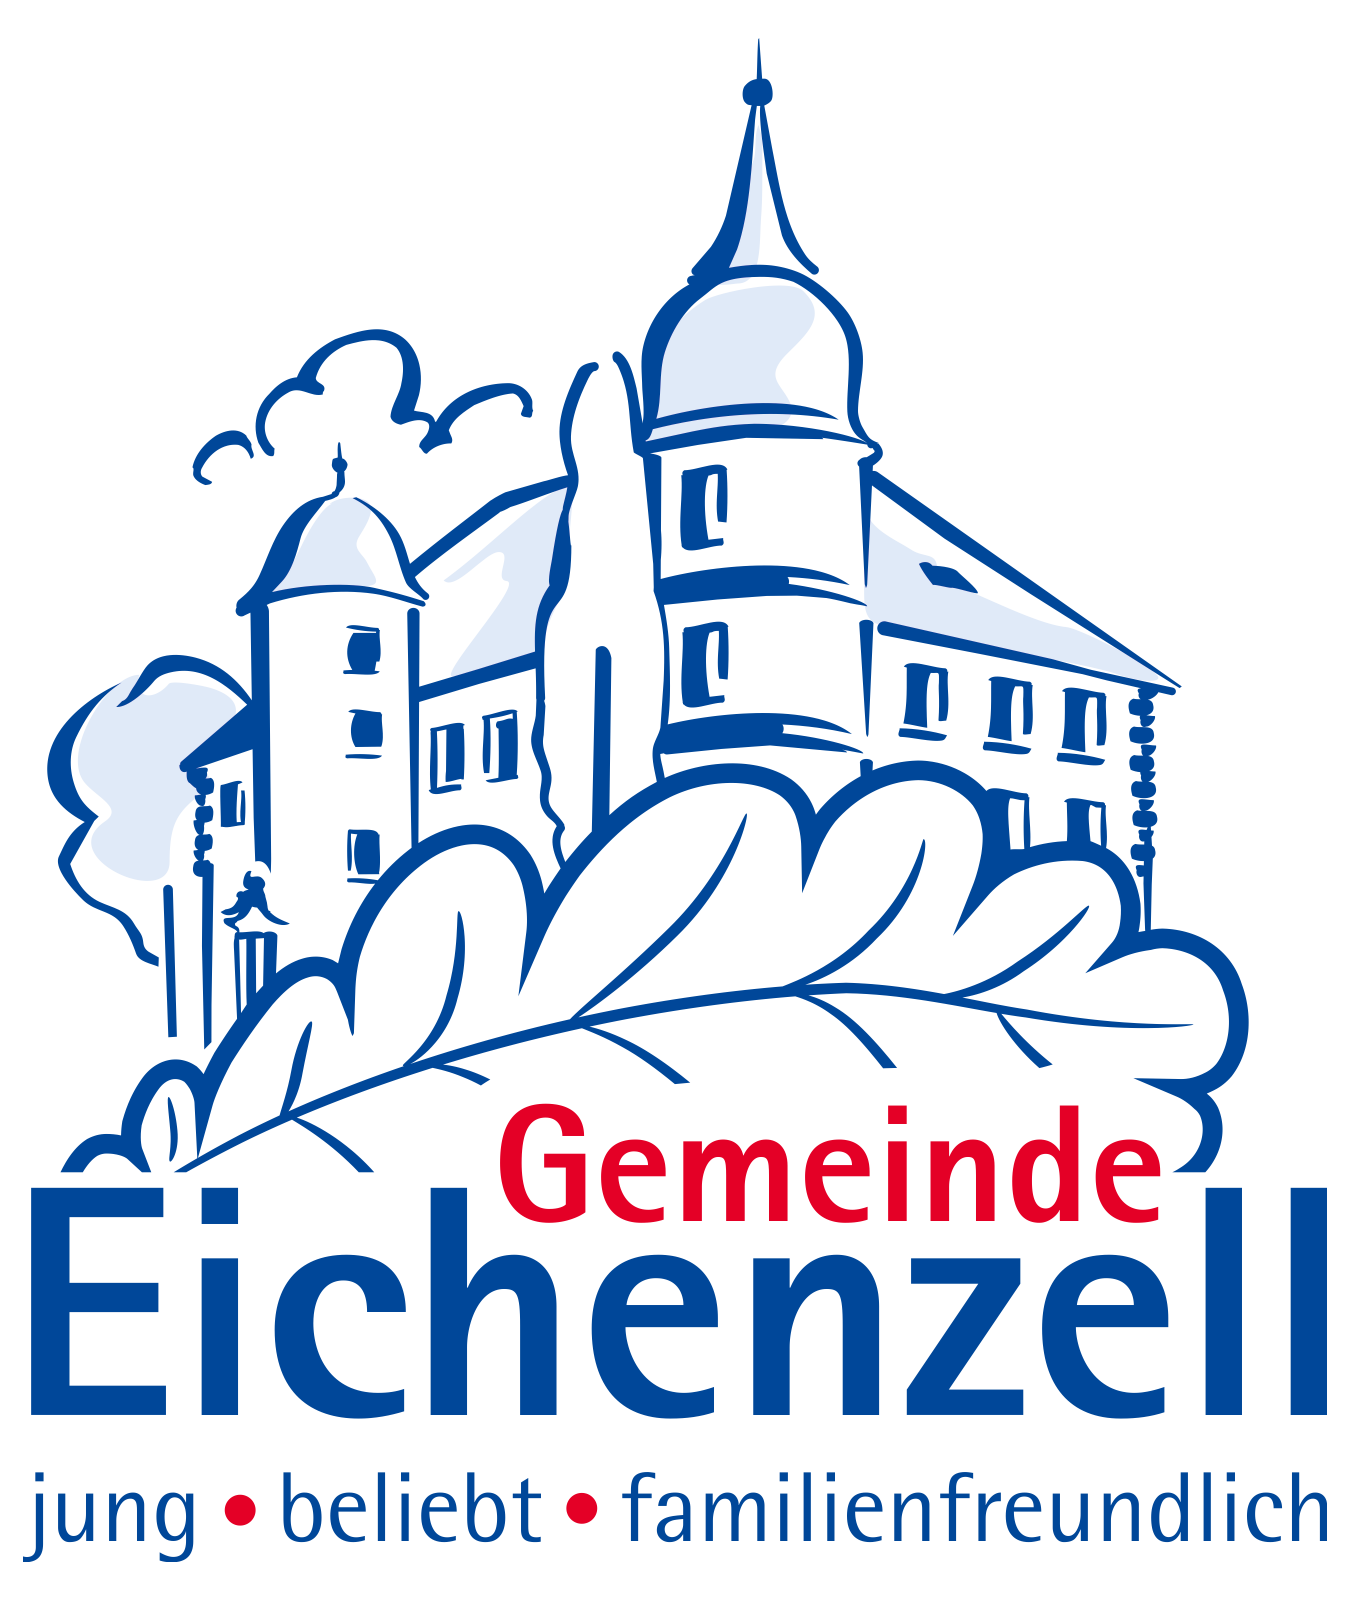 Gemeinde Eichenzell